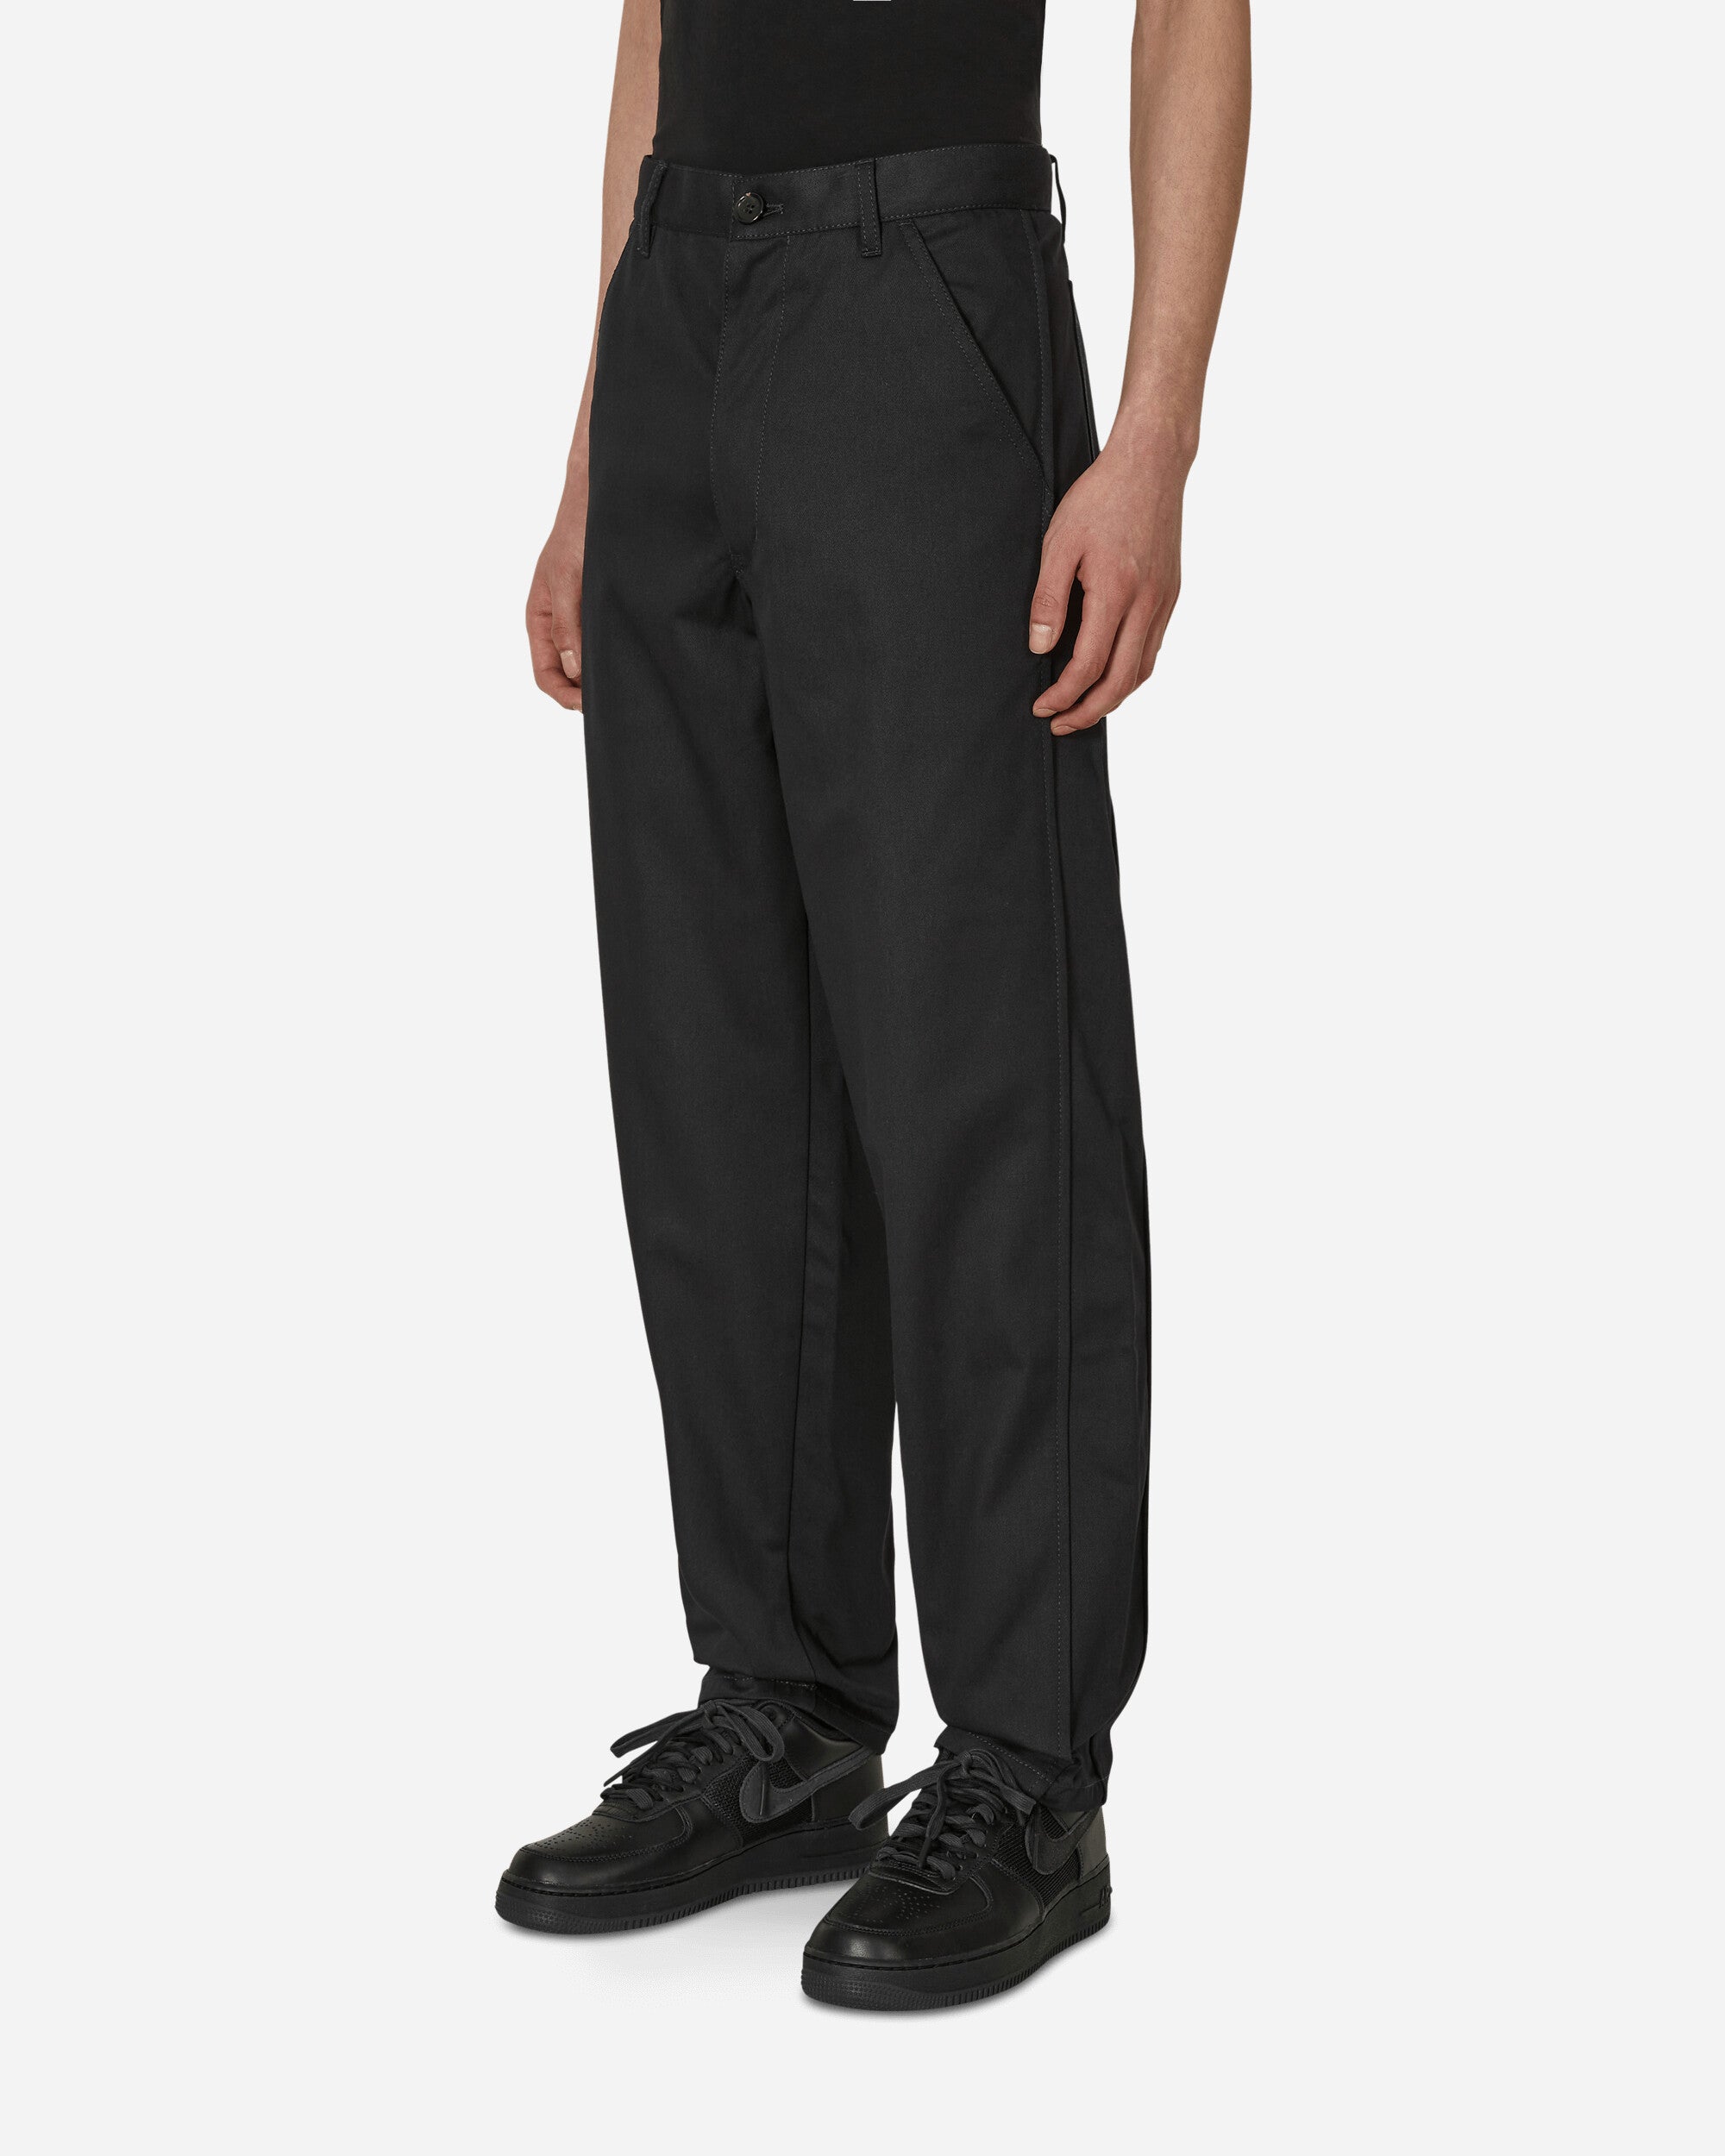 Comme Des Garçons Shirt Trousers Navy Pants Trousers FK-P014-S23 2